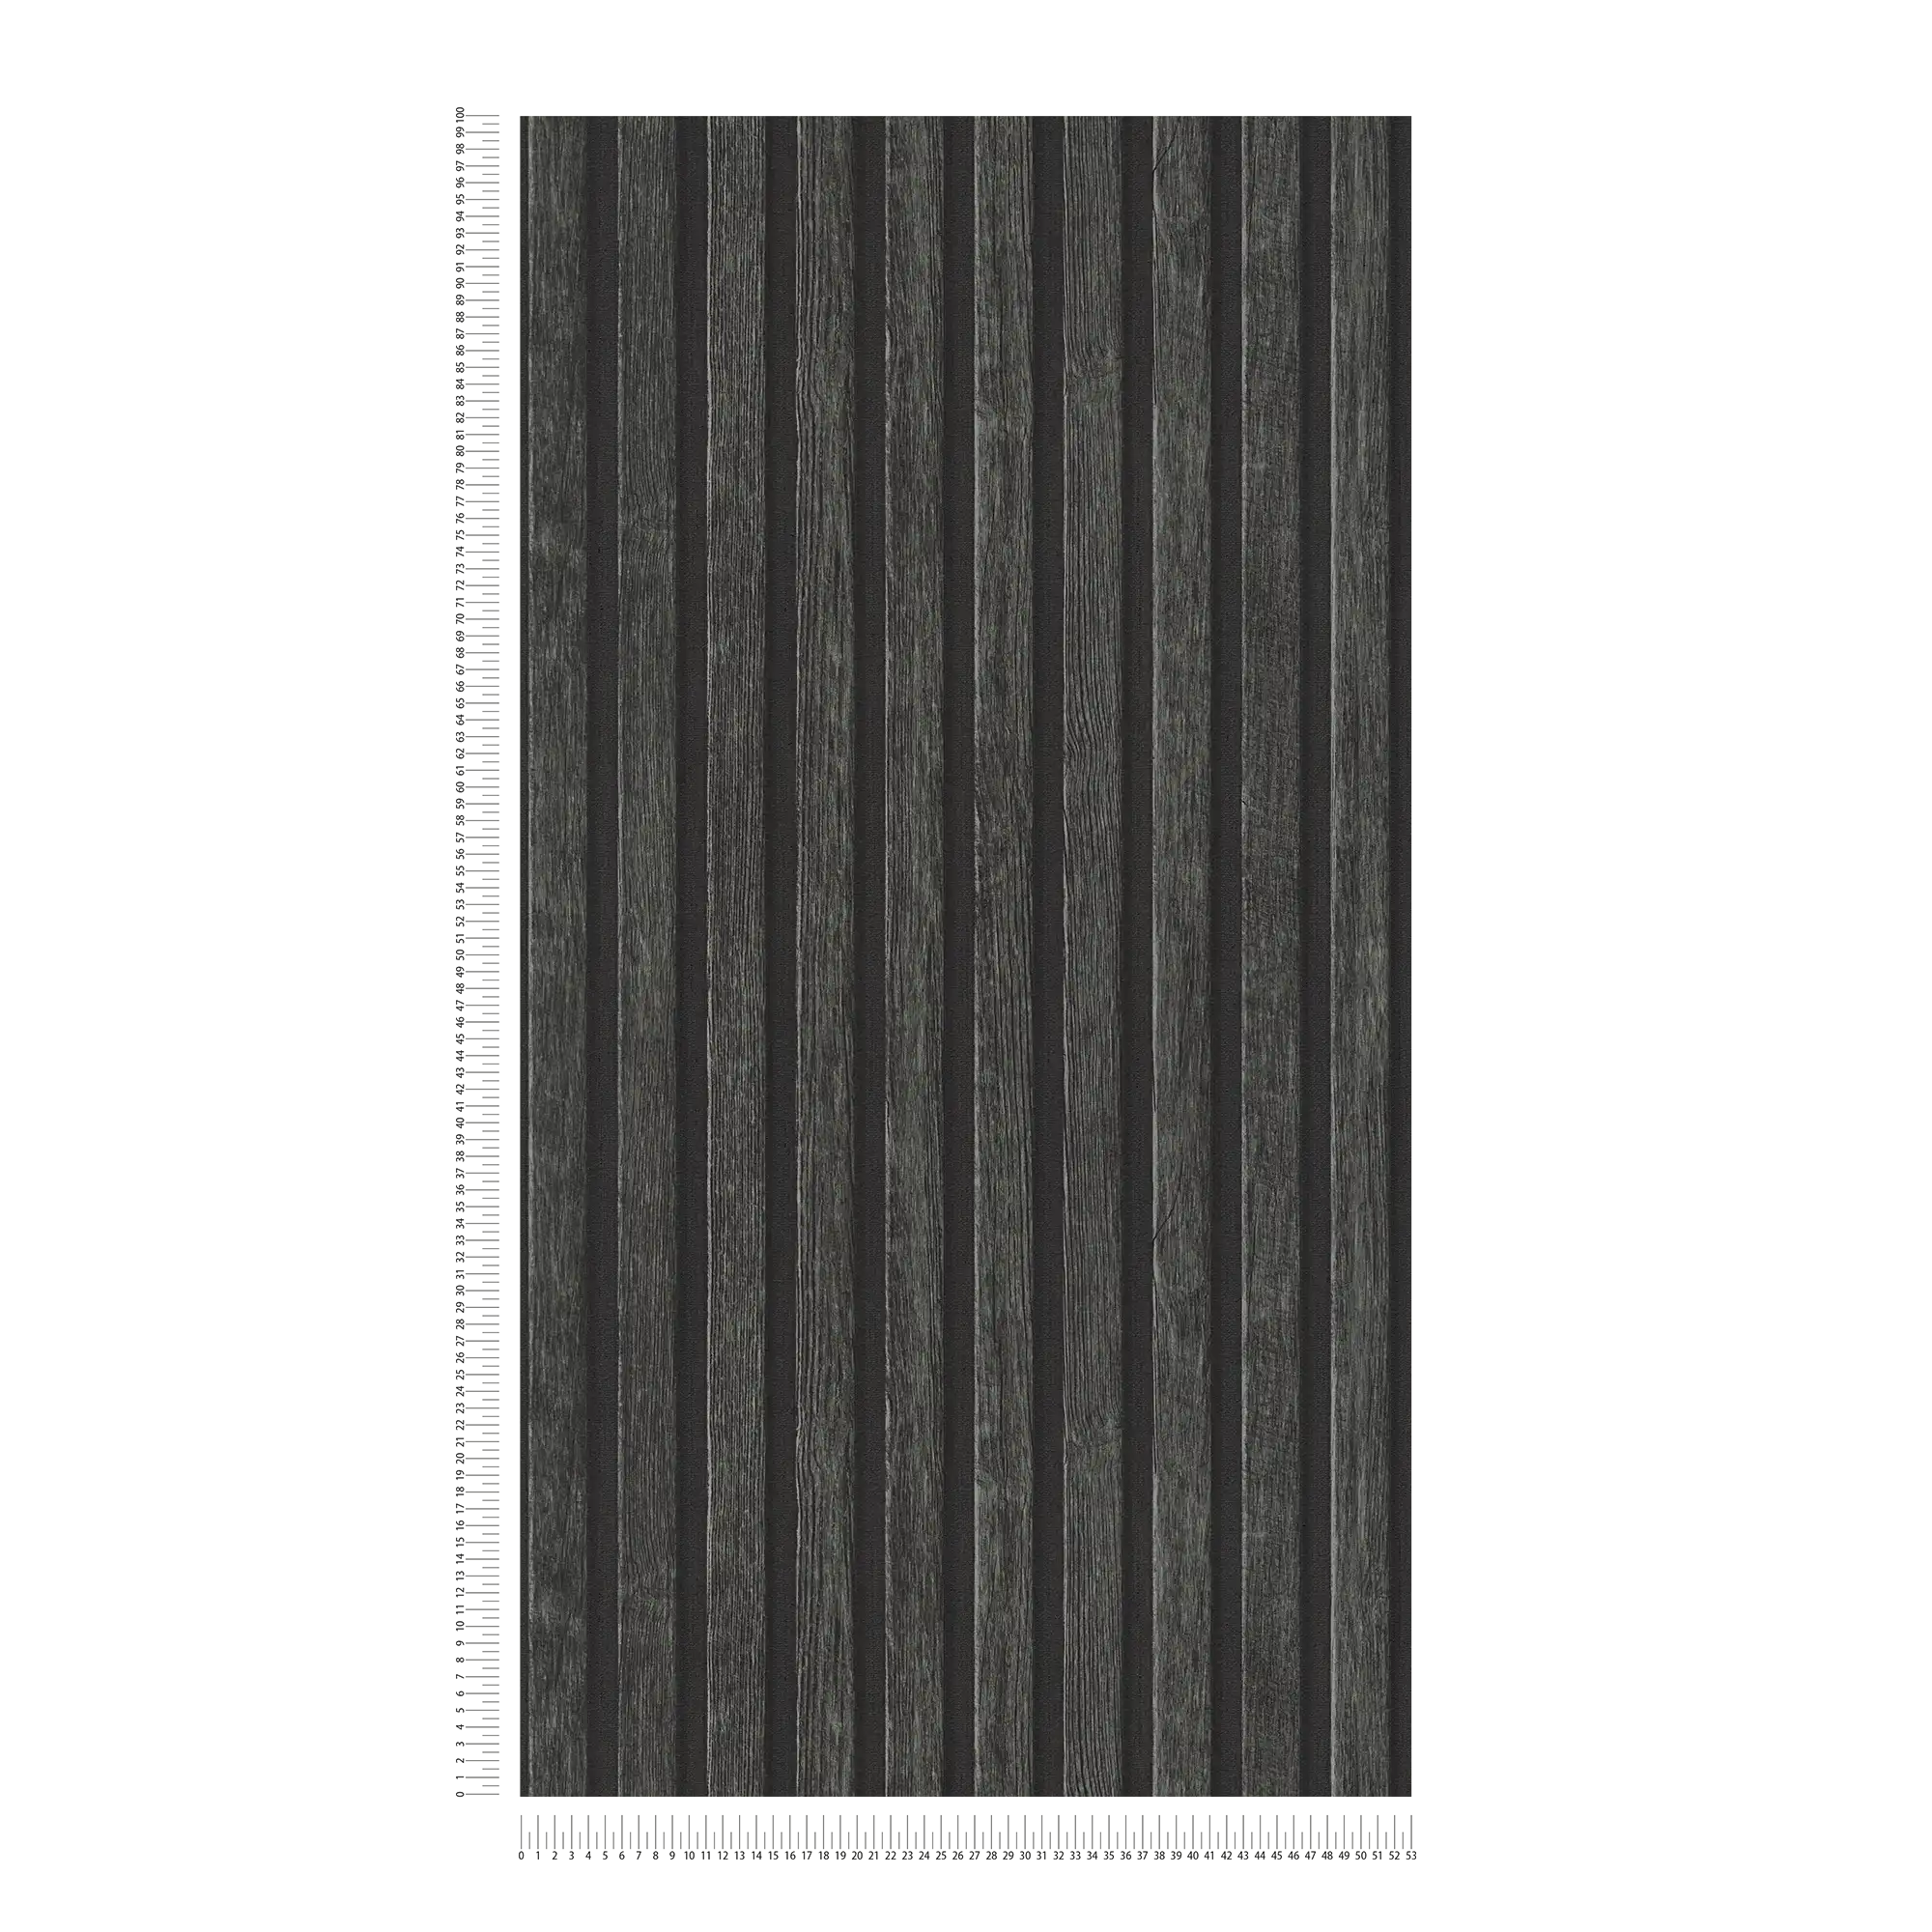             Onderlaag behang in houtlook met paneelmotief - zwart, bruin
        